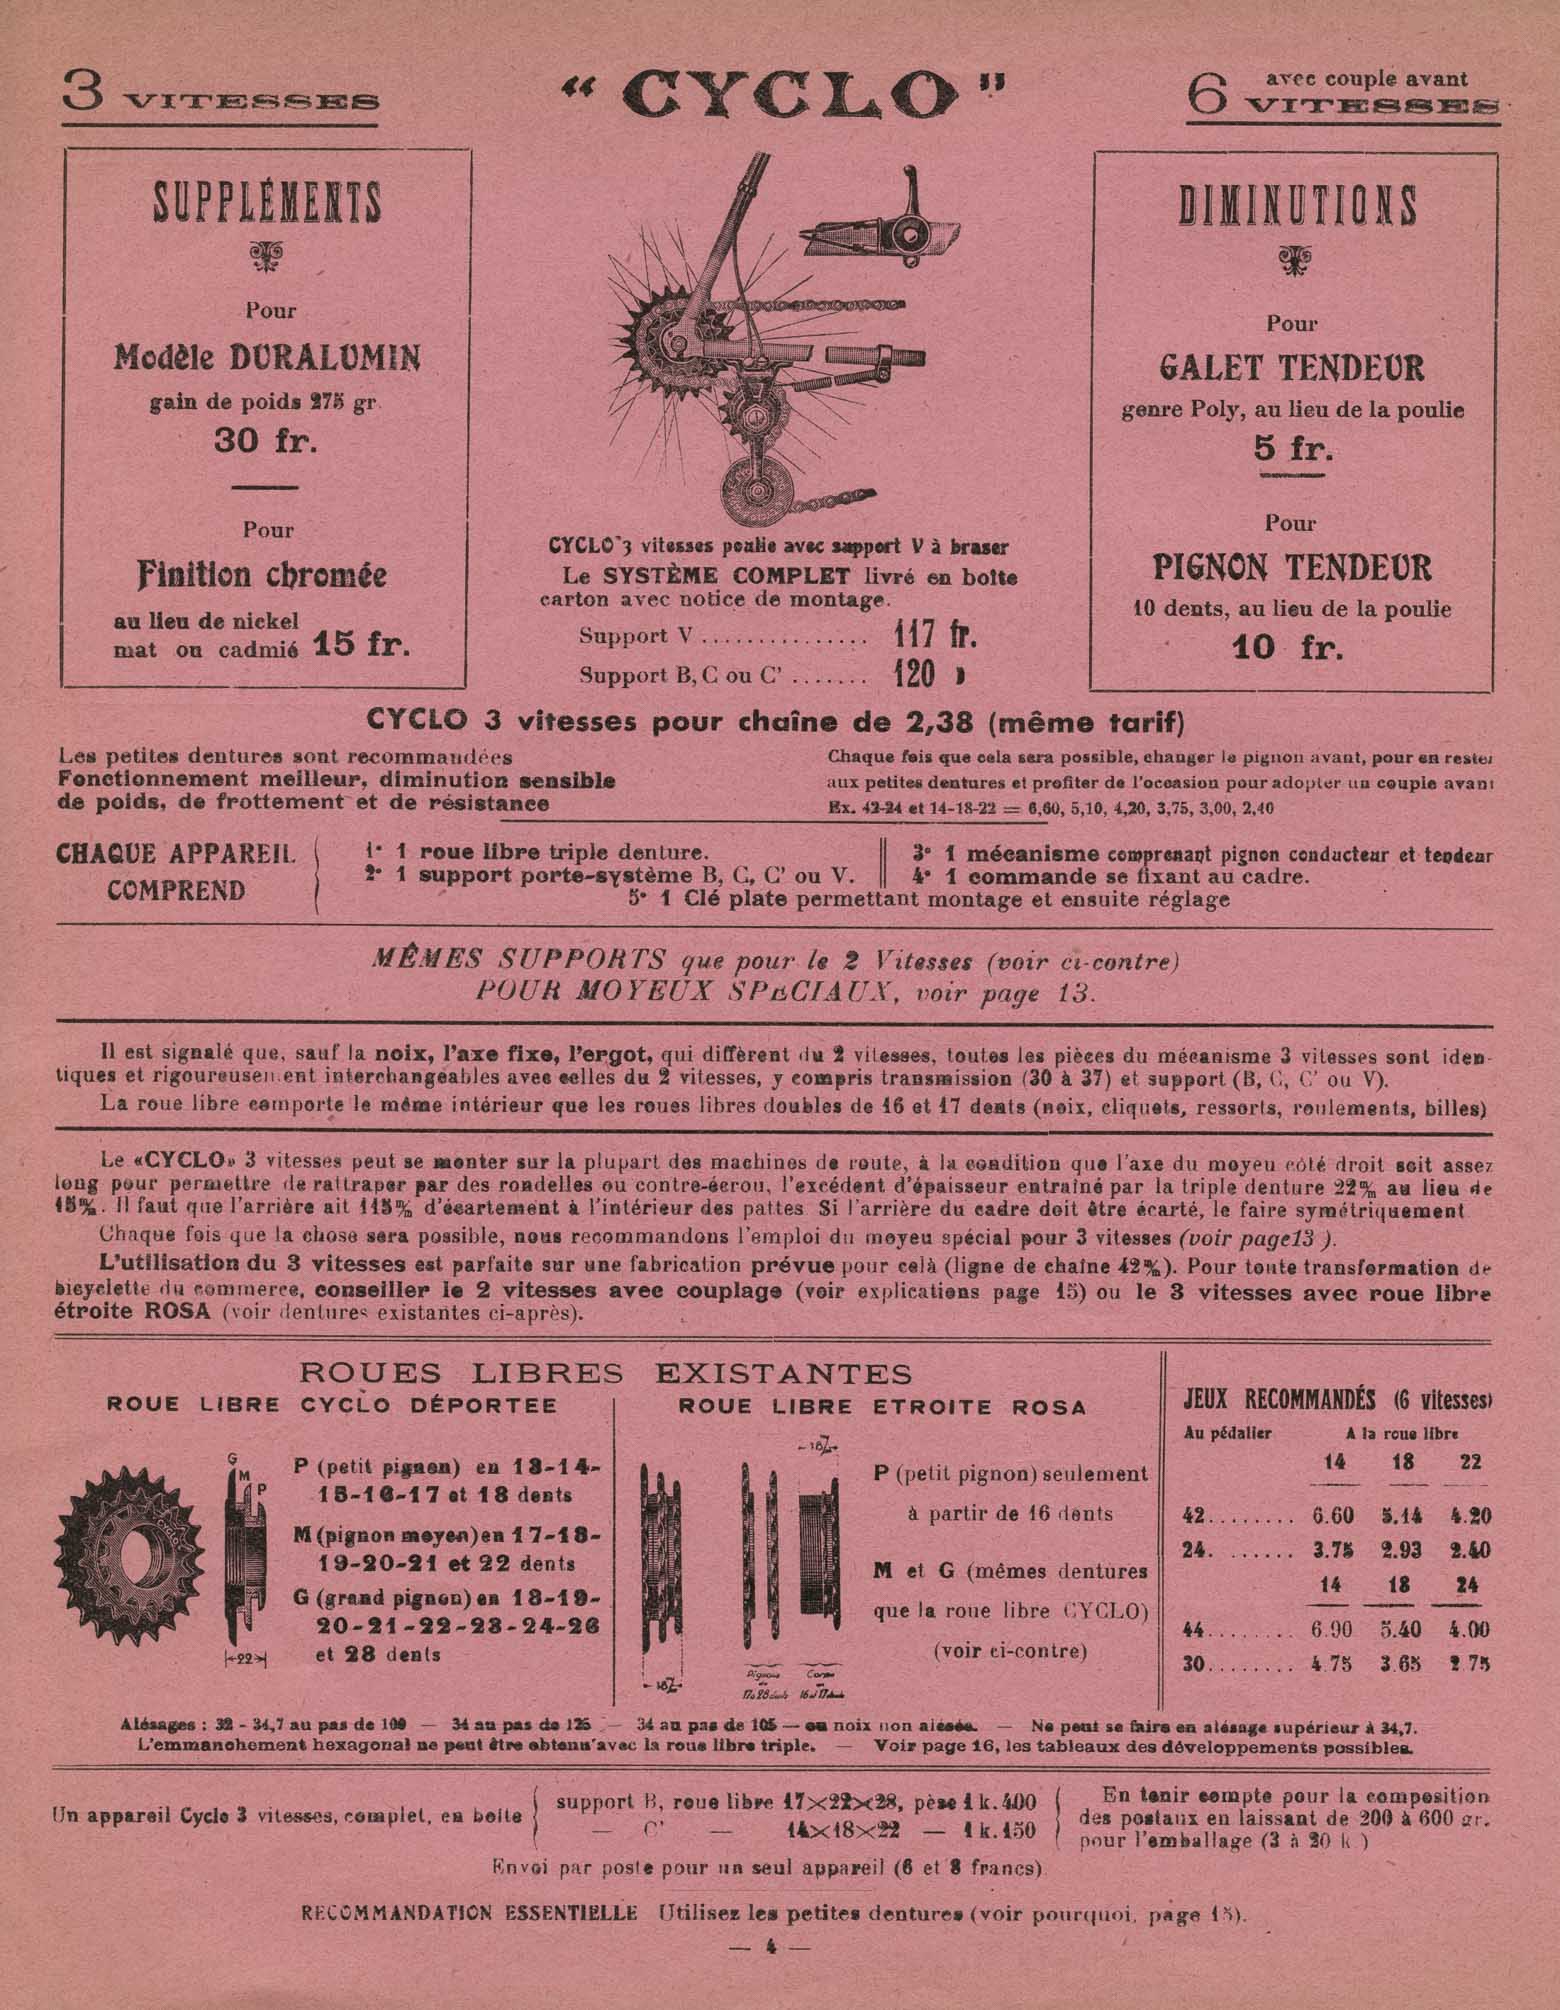 Cyclo - Changement de Vitesse 1936? page 004 main image